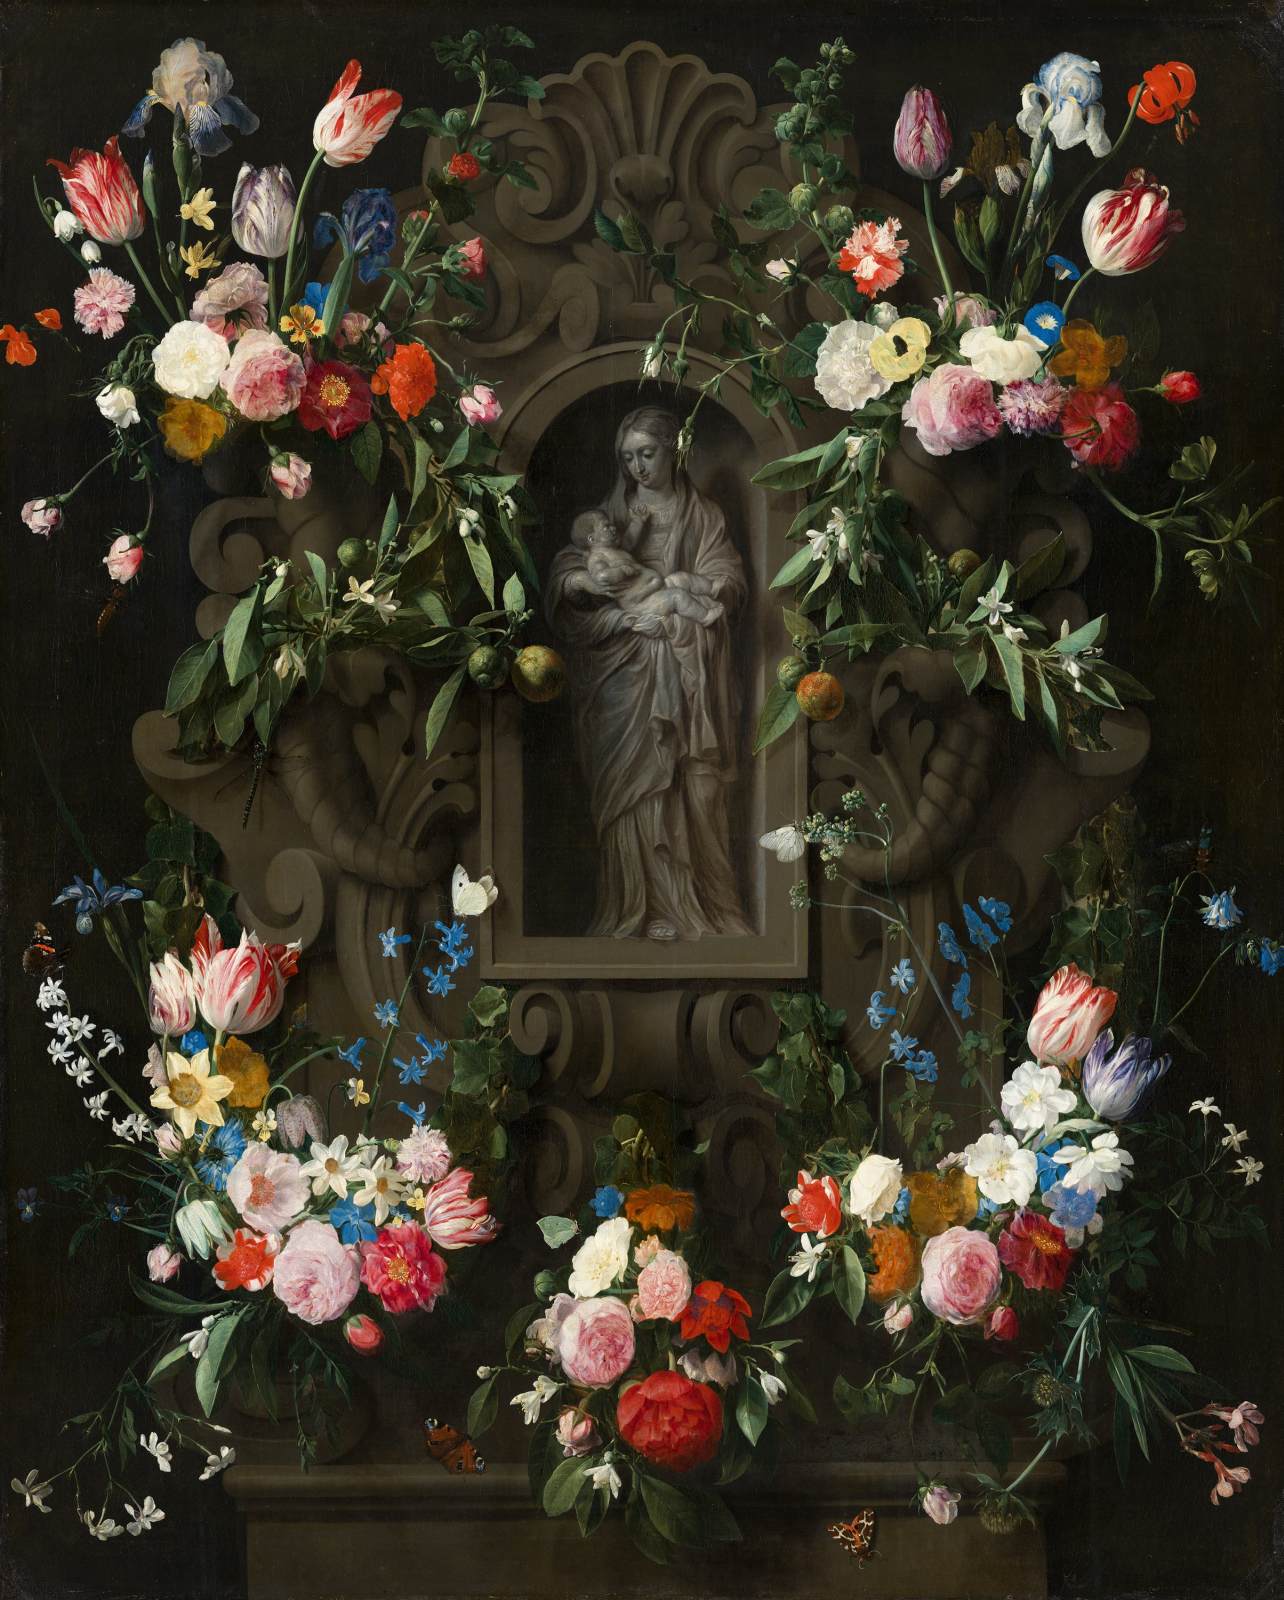 Guirnalda de Flores, die eine Skulptur der Jungfrau Maria umgibt